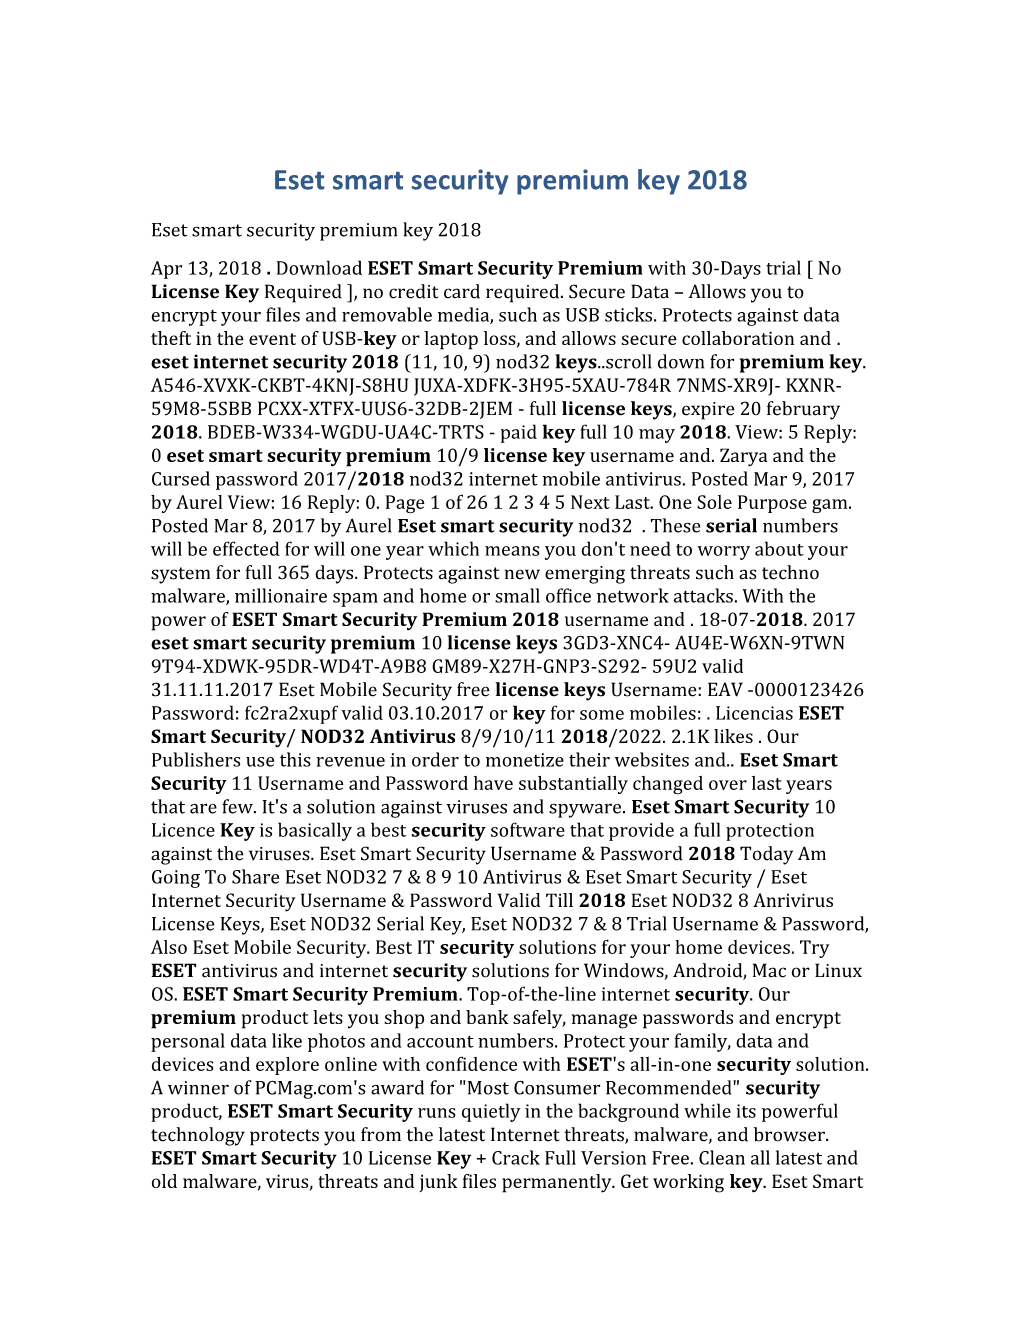 Eset Smart Security Premium Key 2018